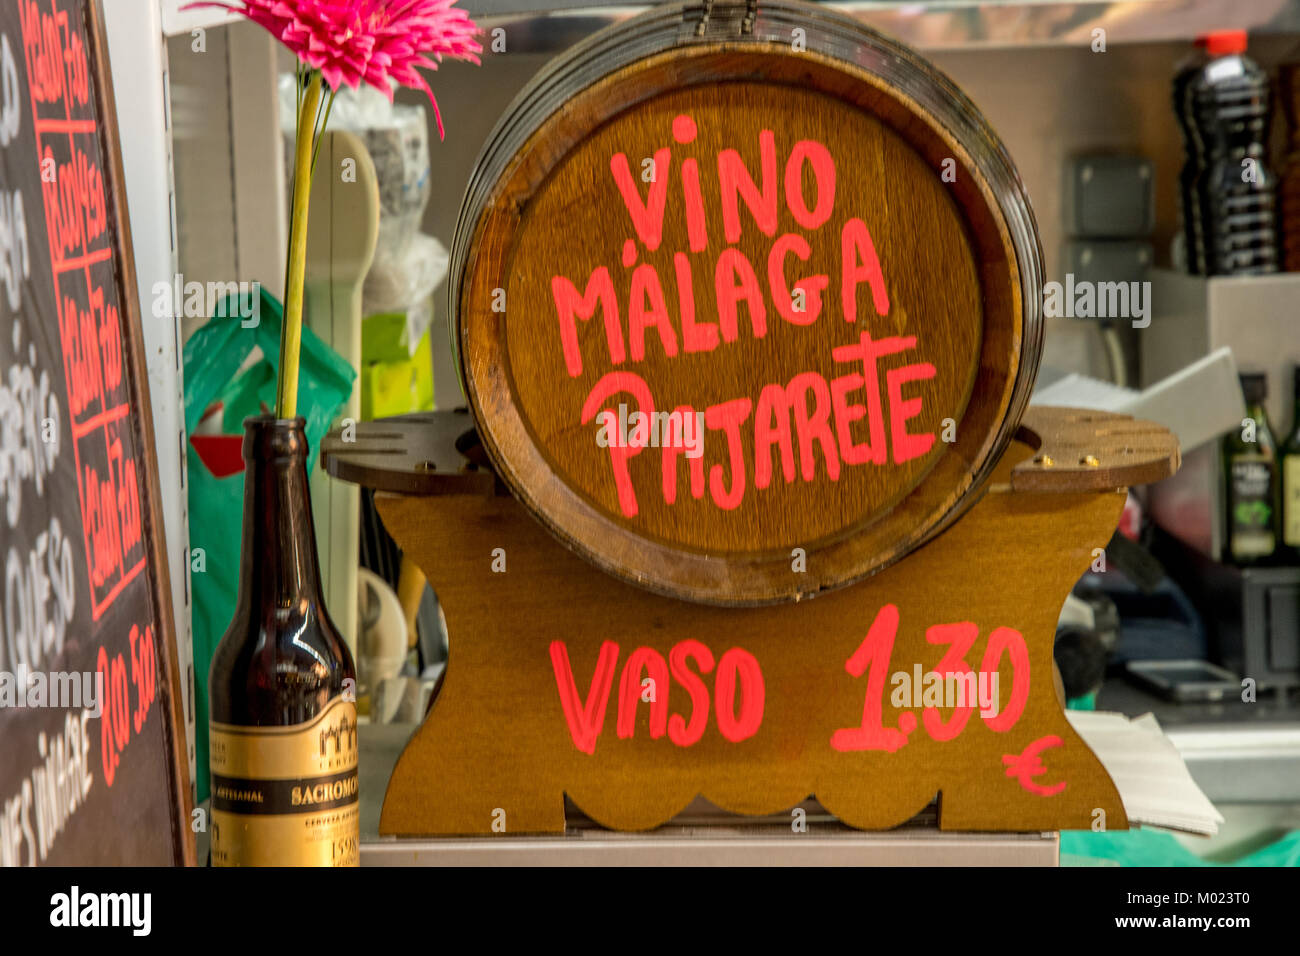 Wine cask in Malaga bar Stock Photo